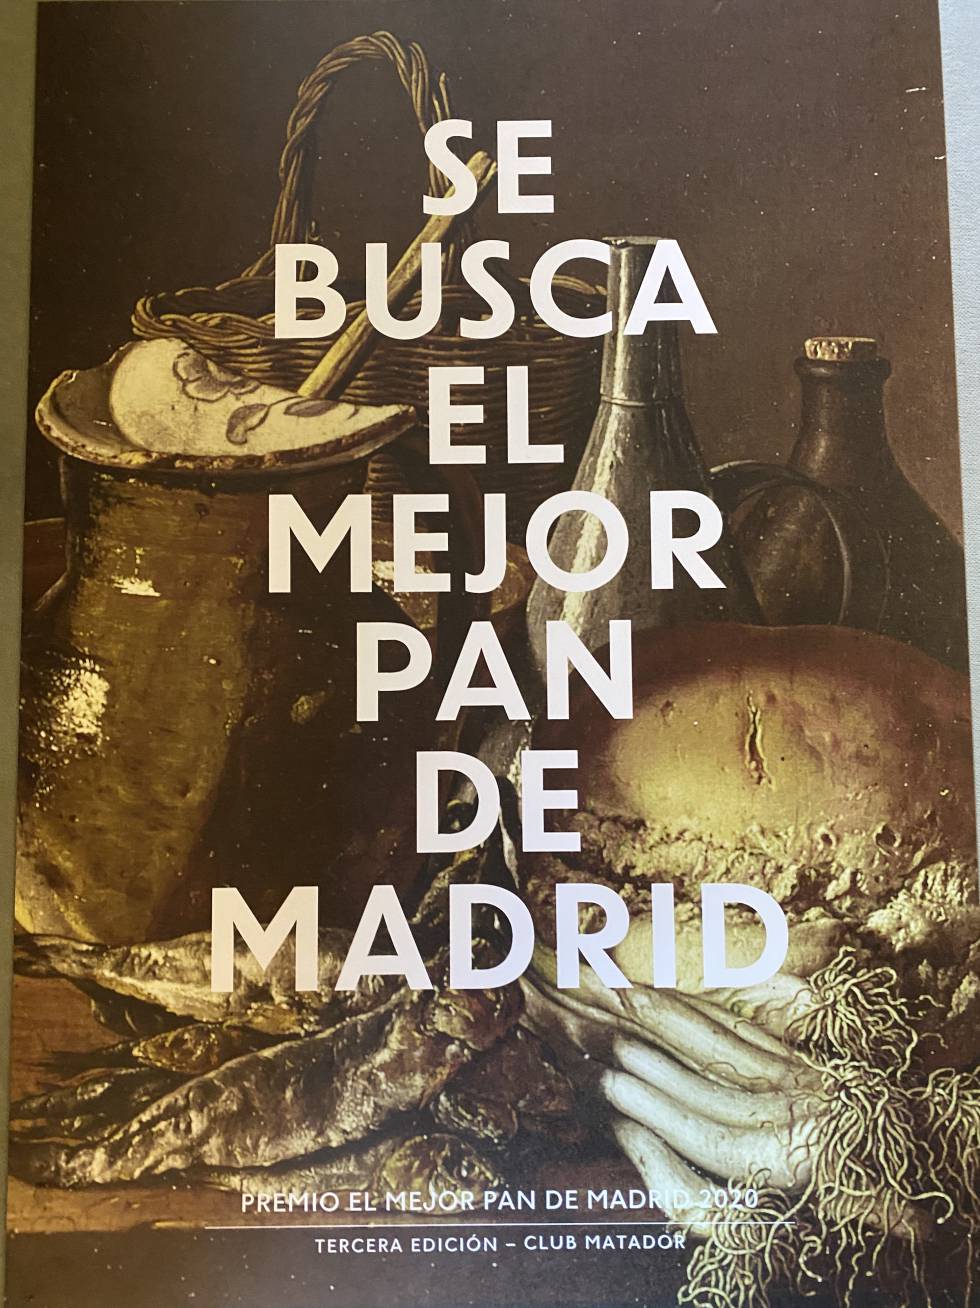 Tras la estela del mejor pan de Madrid